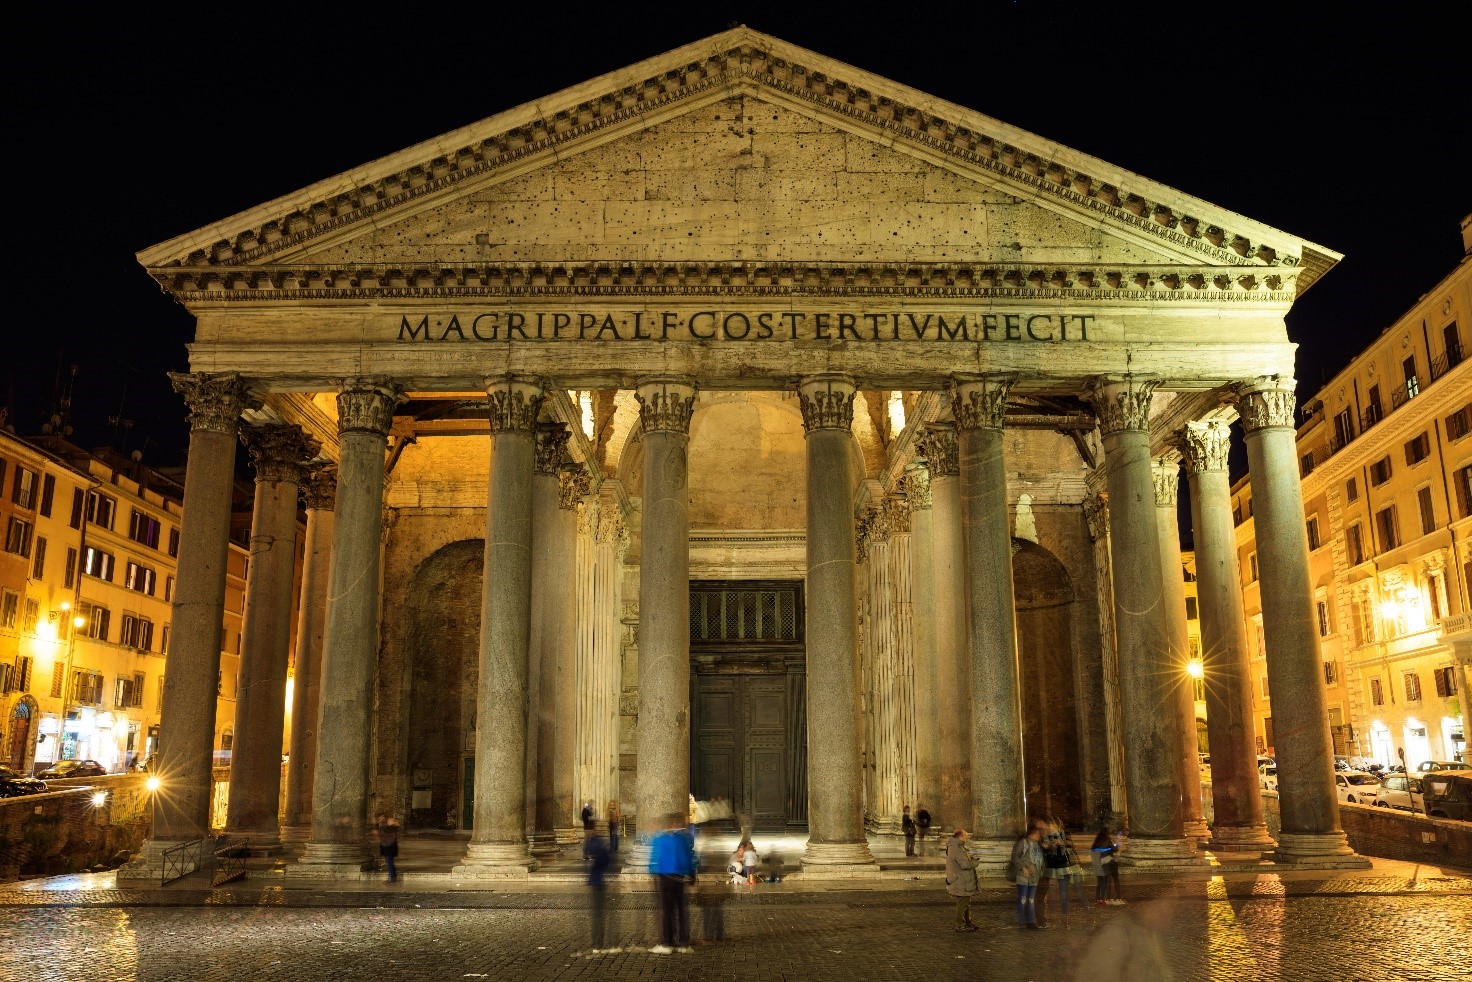 Pantheon monumento a Roma